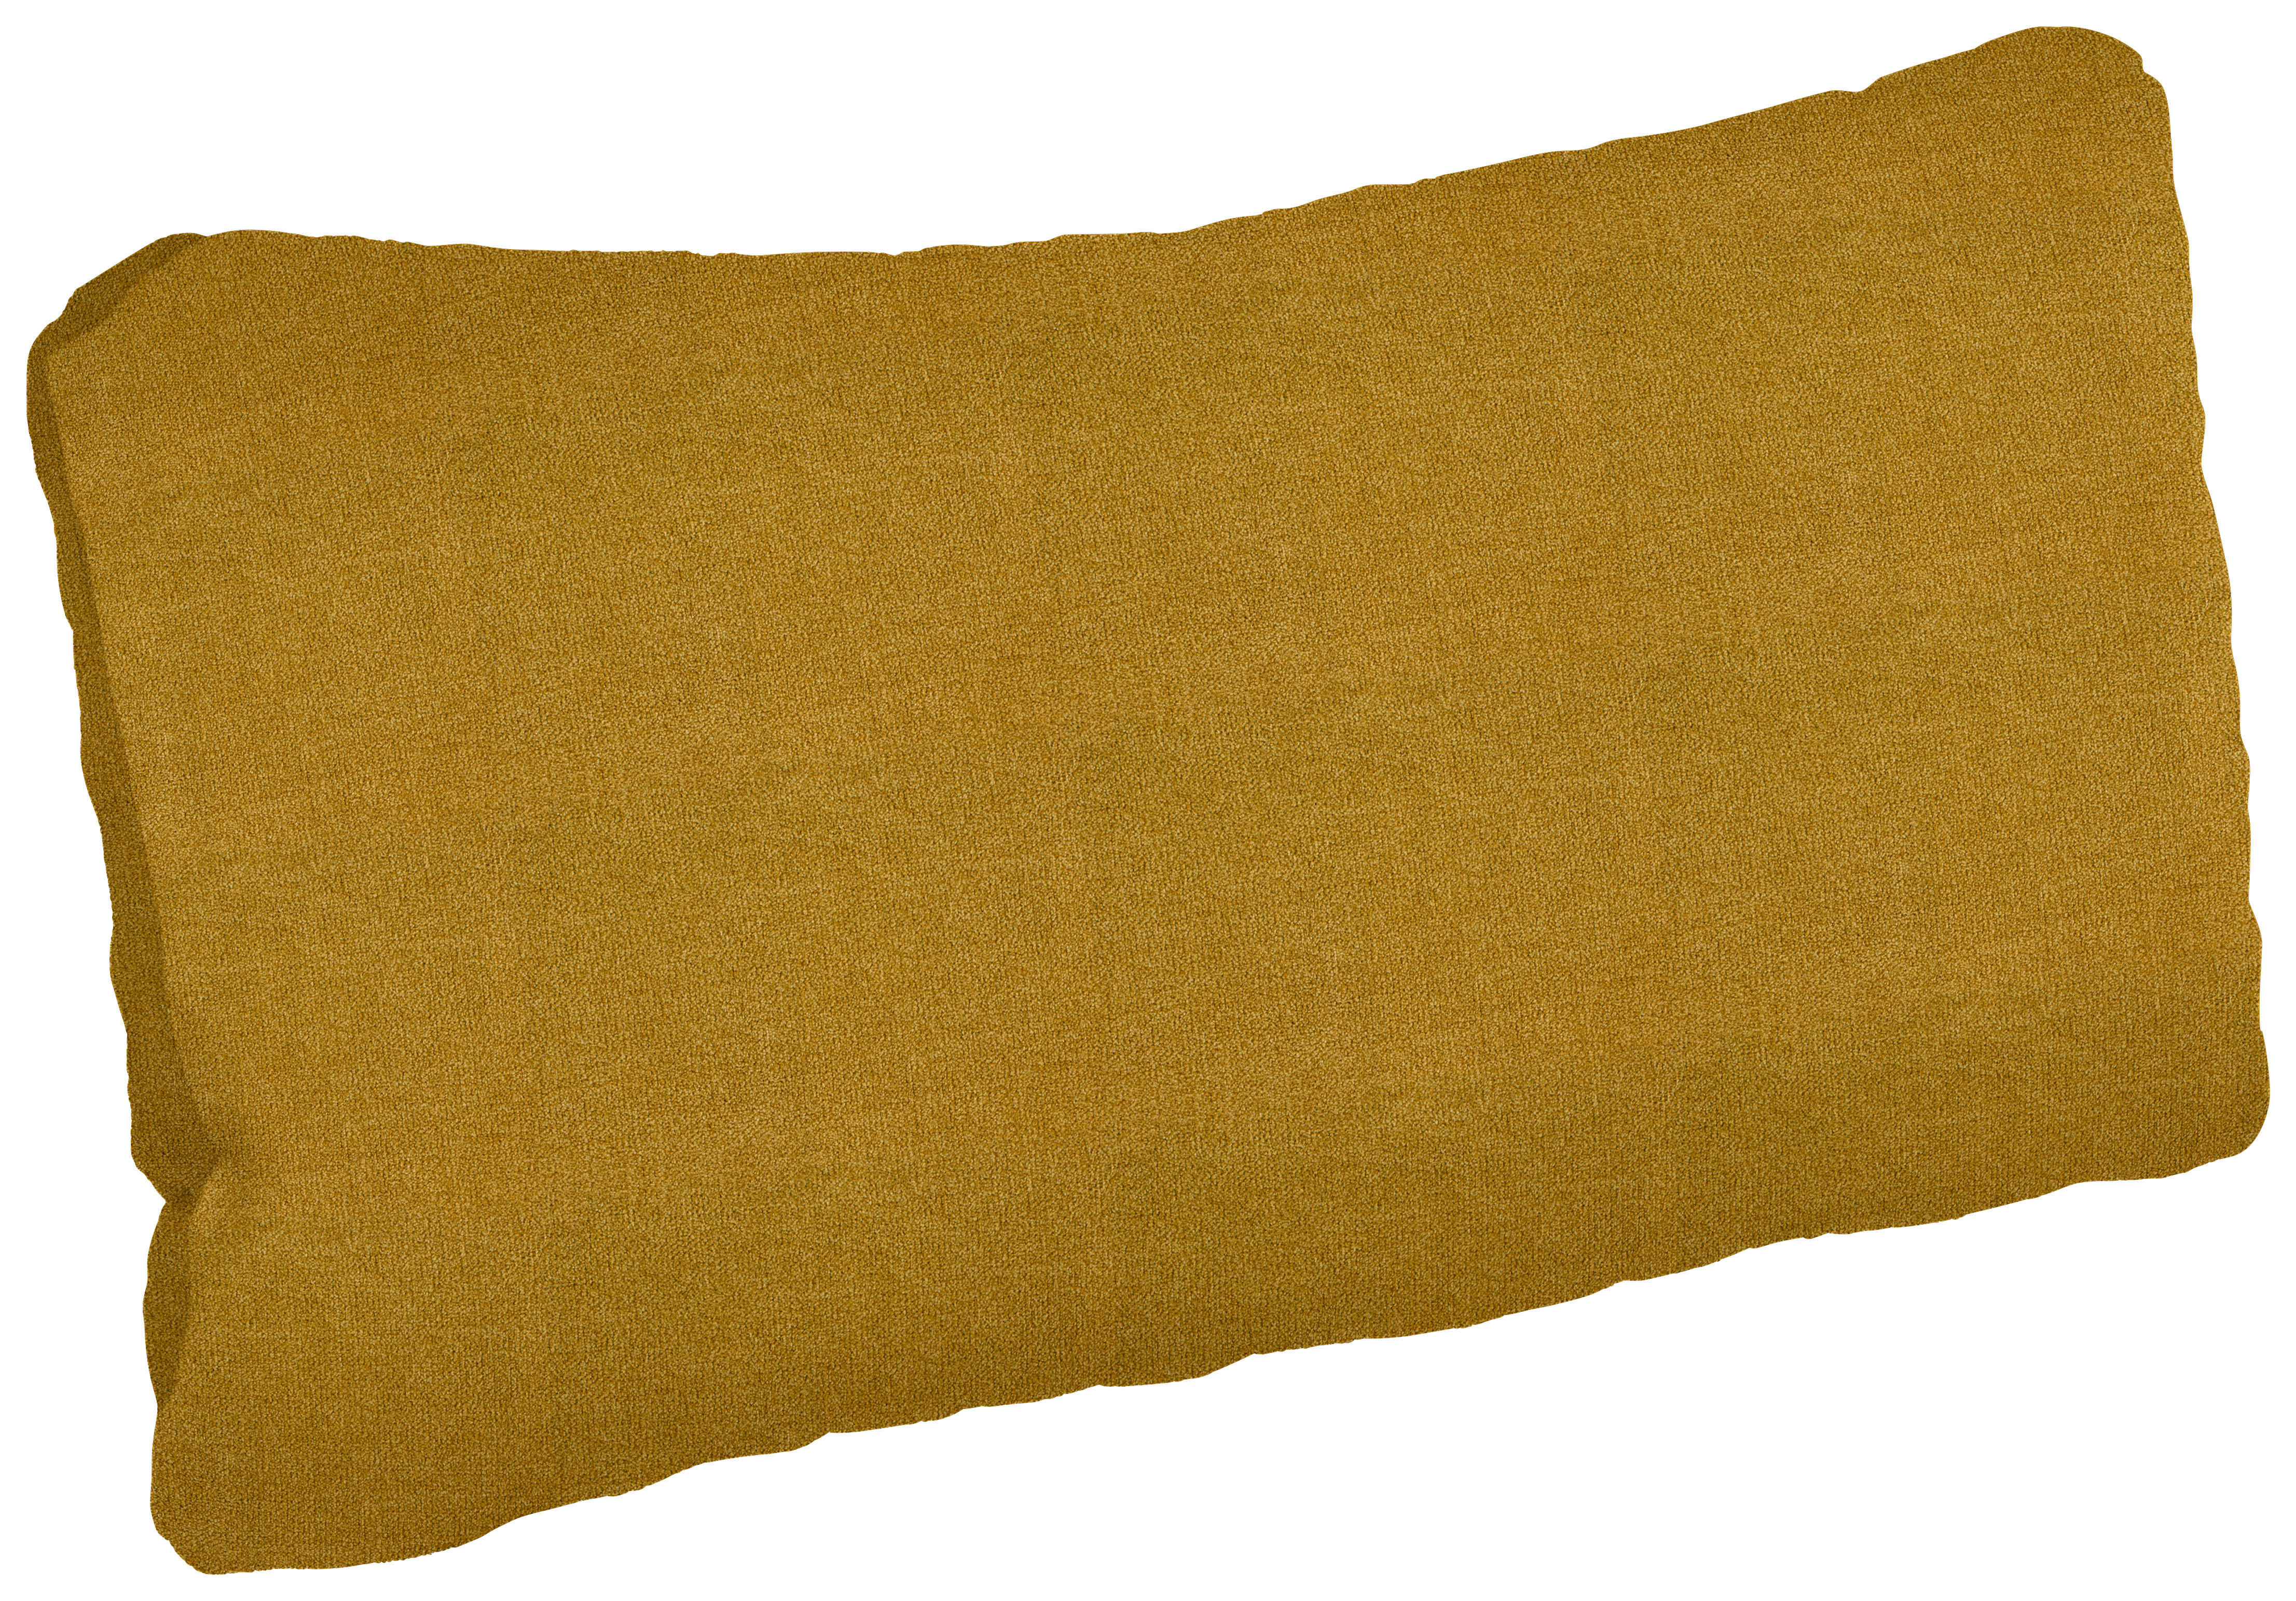 ZIERKISSEN    - Gelb, MODERN, Textil (62/29cm)